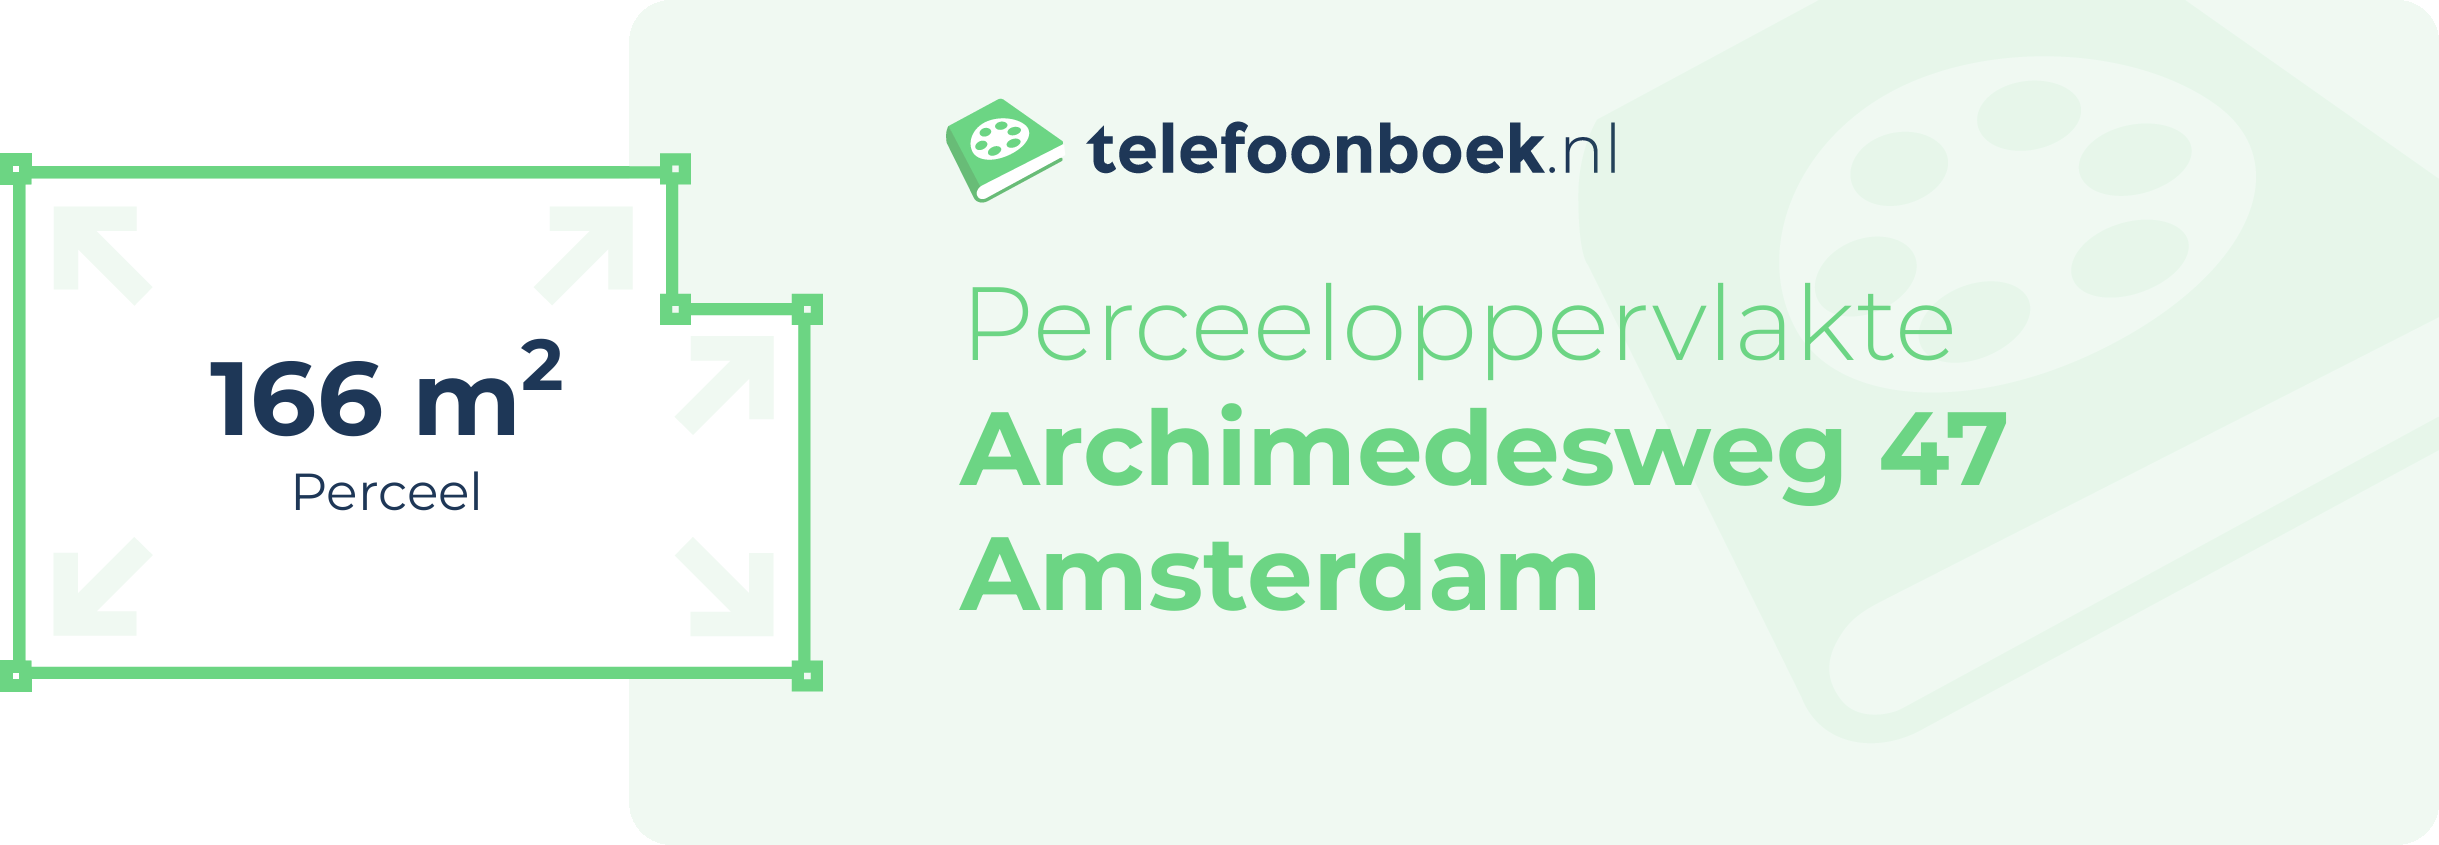 Perceeloppervlakte Archimedesweg 47 Amsterdam